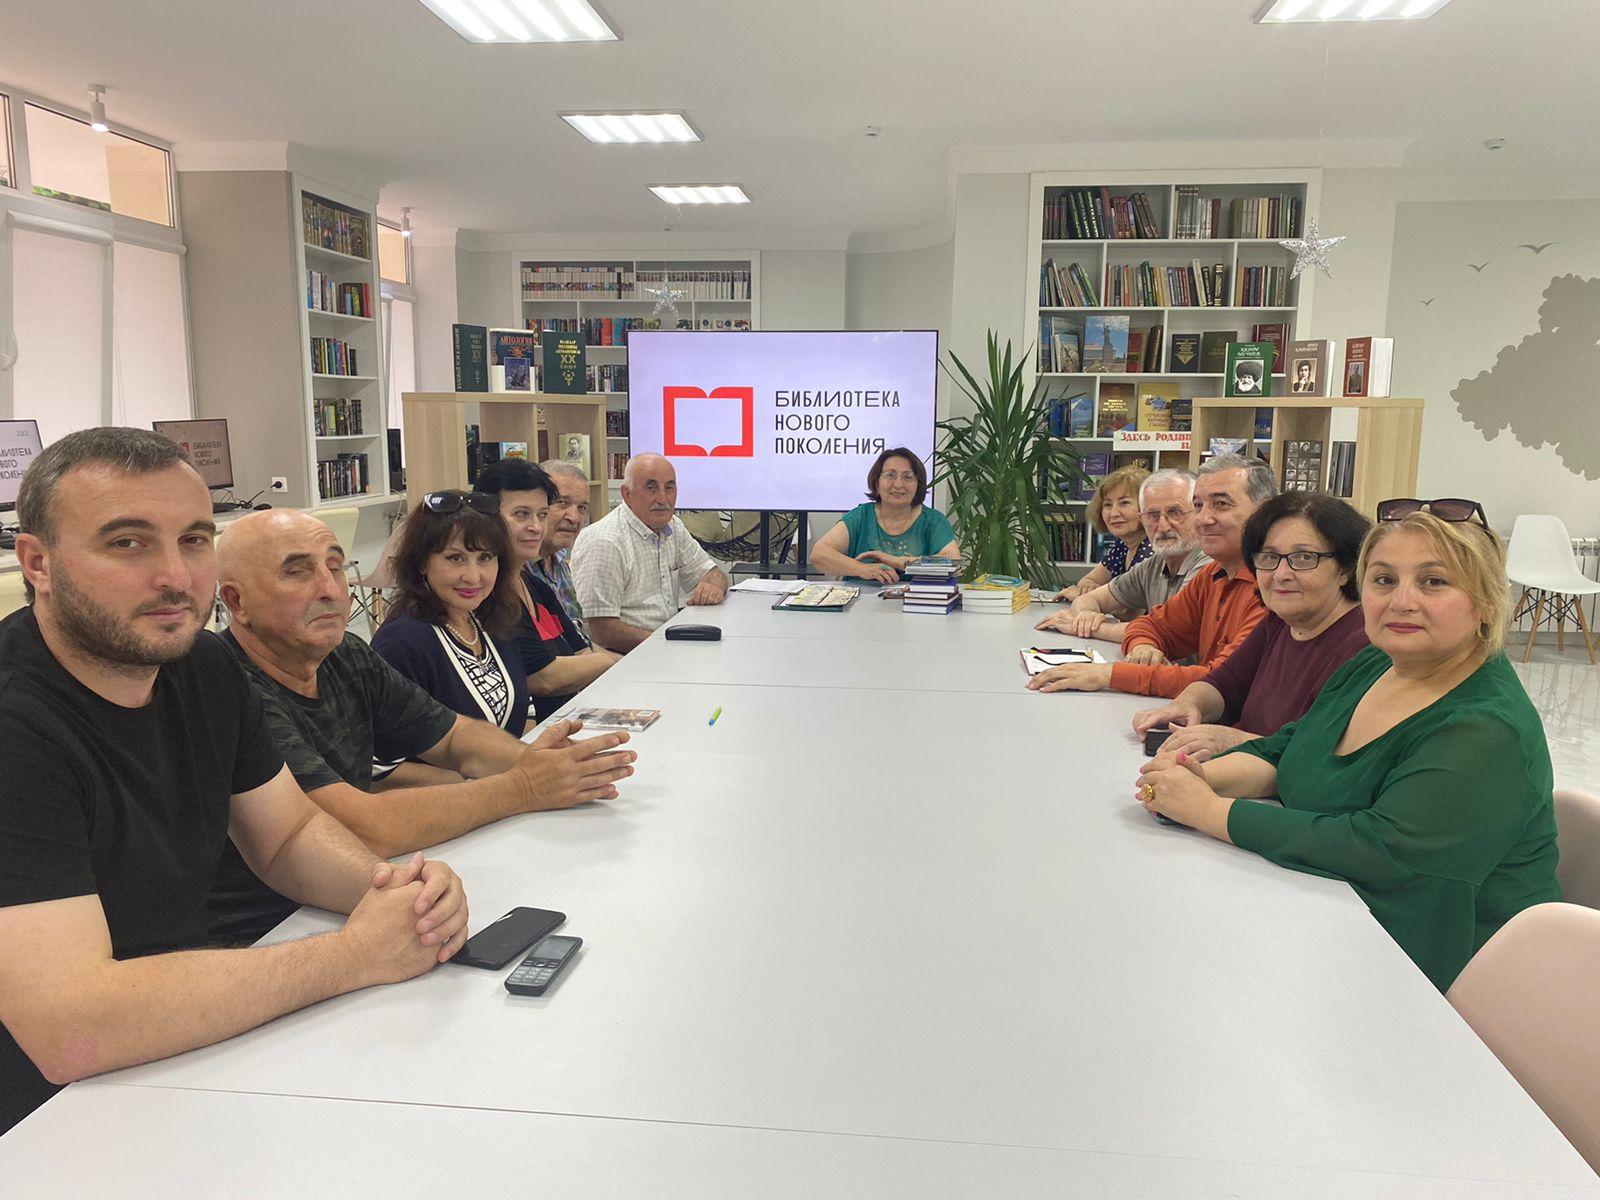 18 июня в Нальчике прошла встреча президента Клуба писателей Кавказа Муслимовой Миясат с членами его кабардино-балкарского отделения.